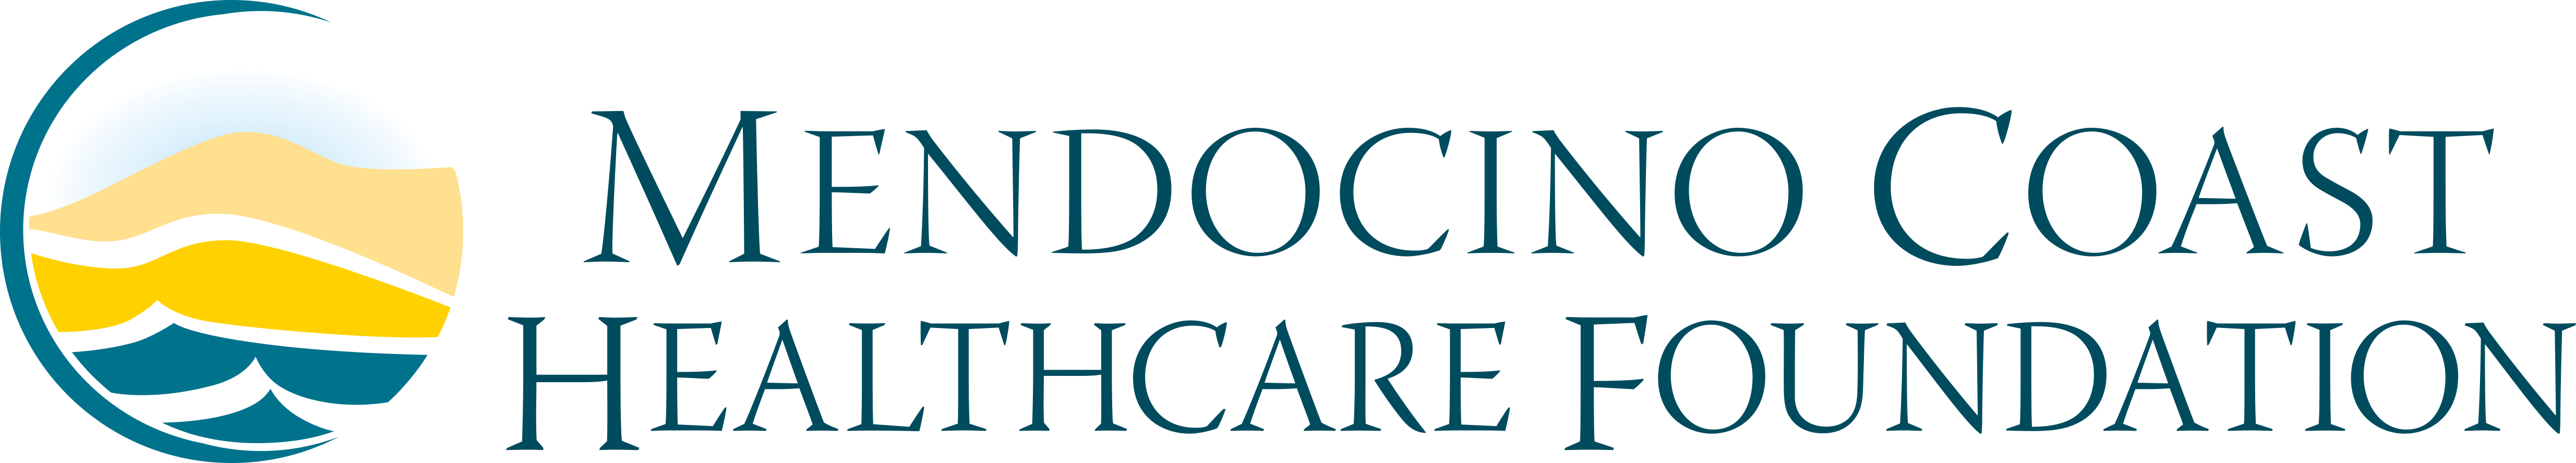 Mendocino Coast Healthcare Foundation logo